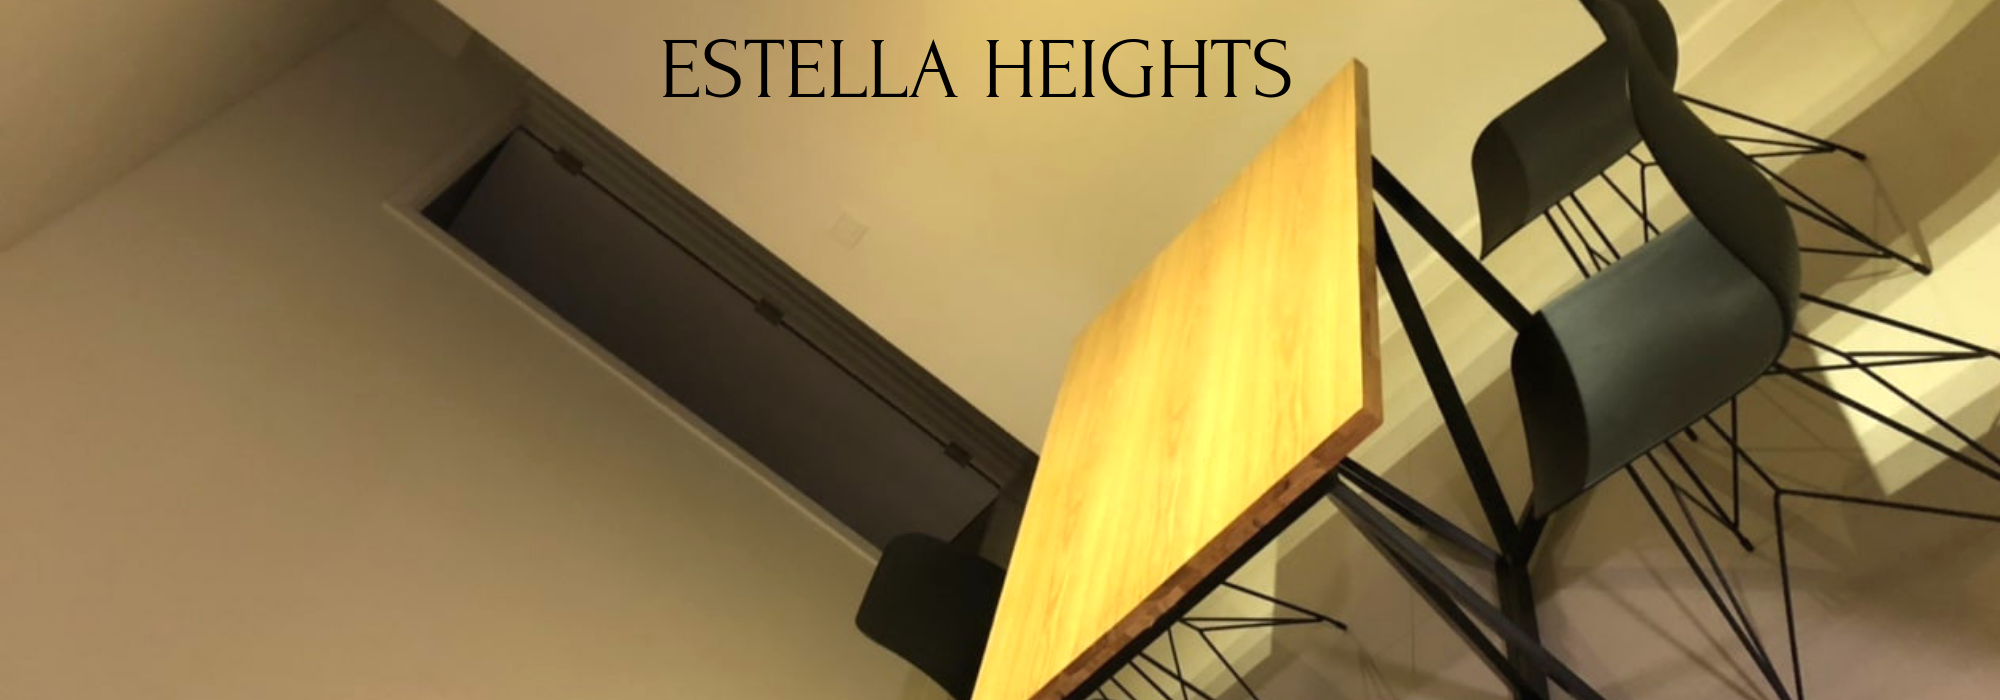 Estella Height cho thuê – giá tốt nhất cho căn hộ 2 phòng ngủ